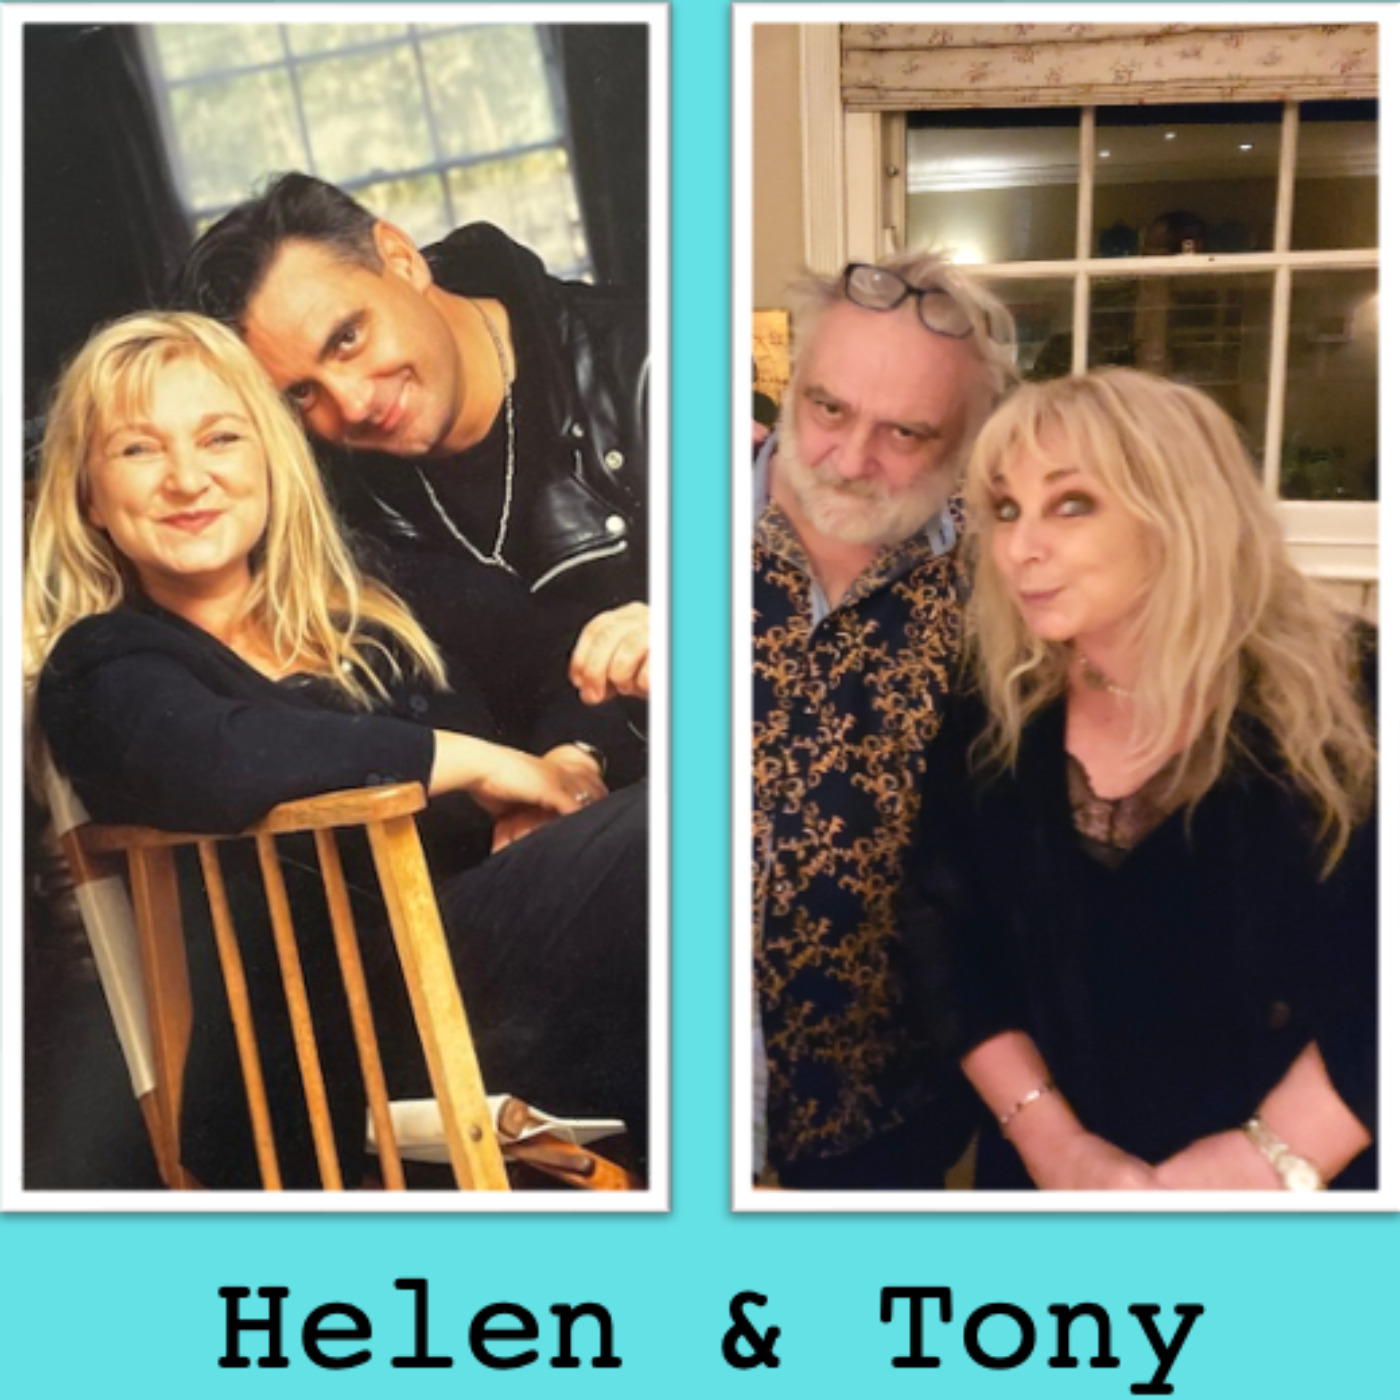 2. Helen and Tony